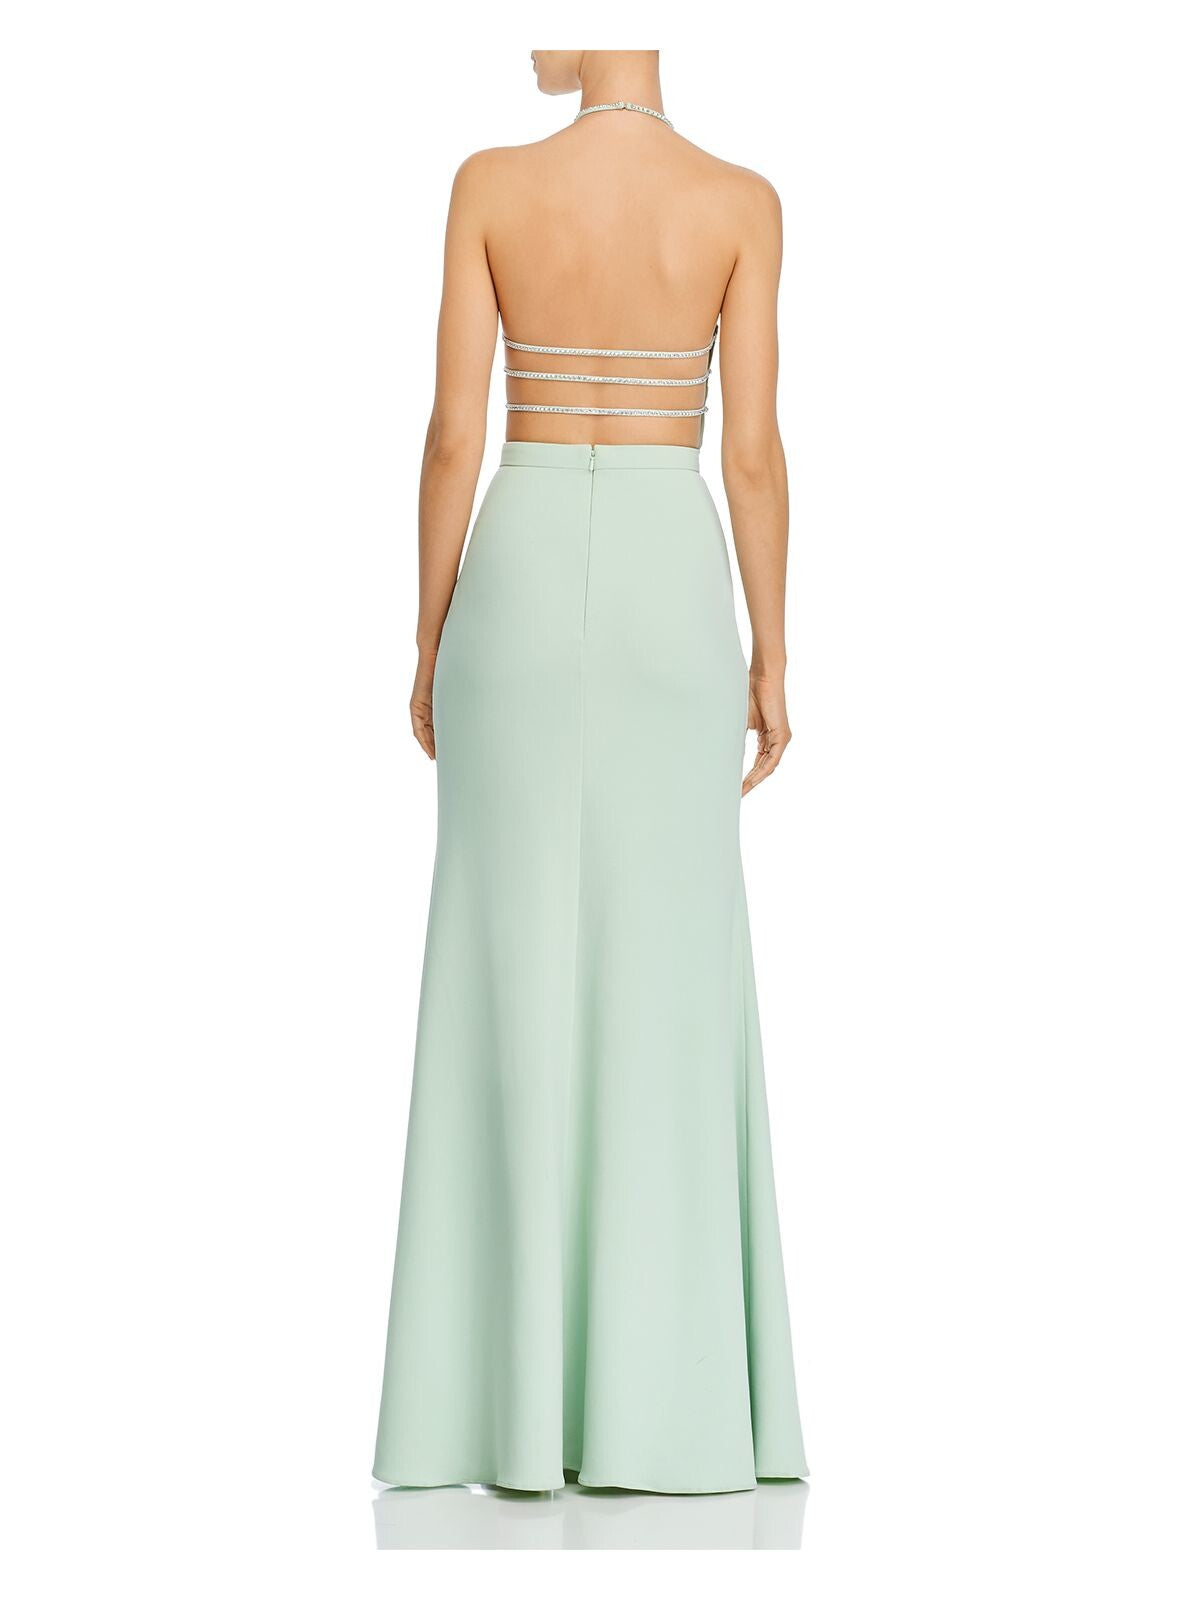 AQUA FORMAL Womens Green Rhinestone Zippered Slitted Bra Insert Sleeveless Halter Full-Length Formal Gown Dress 0